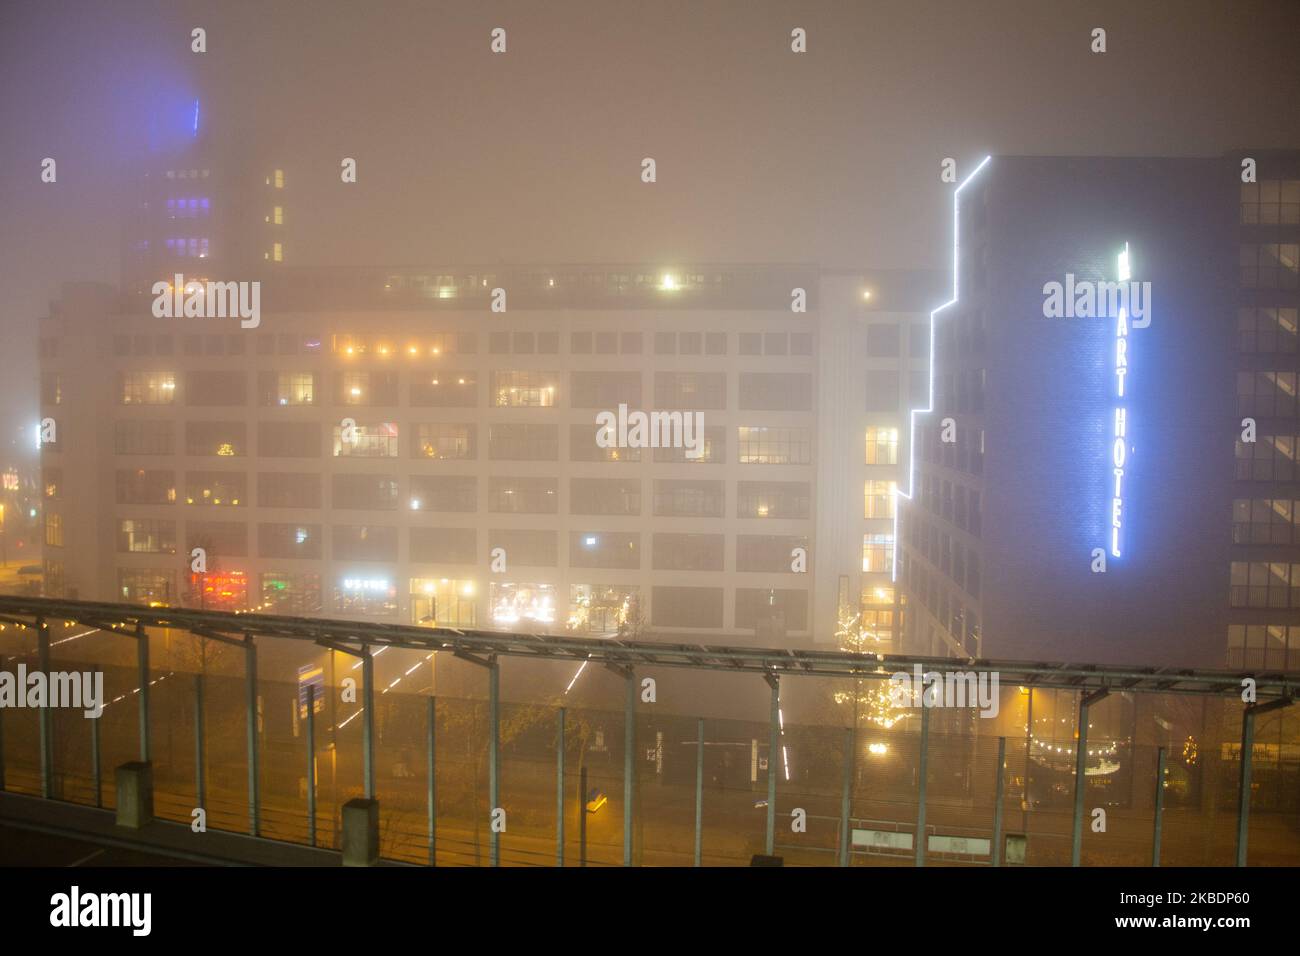 Nebel im Stadtzentrum der niederländischen Stadt Eindhoven. Niedrige Temperaturen, kaltes Winterwetter, schlechte Sicht, dichter Nebel und reduzierter Verkehr in der ersten Nacht des Jahres 2020. Eindhoven, Niederlande - 1. Januar 2020 (Foto von Nicolas Economou/NurPhoto) Stockfoto